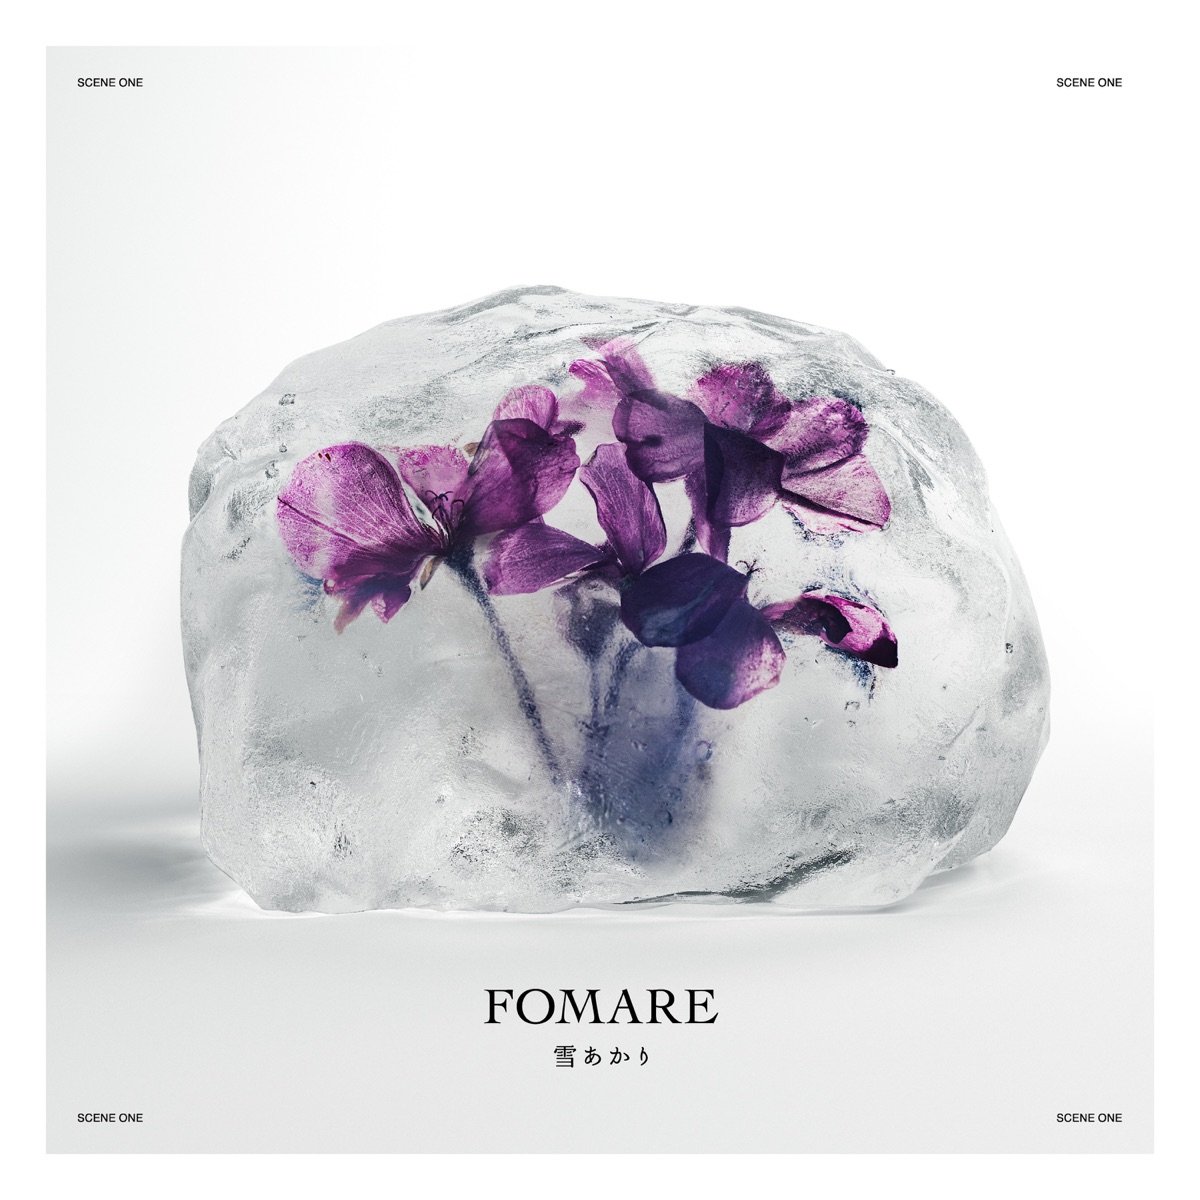 Cover art for『FOMARE - Yukiakari』from the release『Yukiakari』